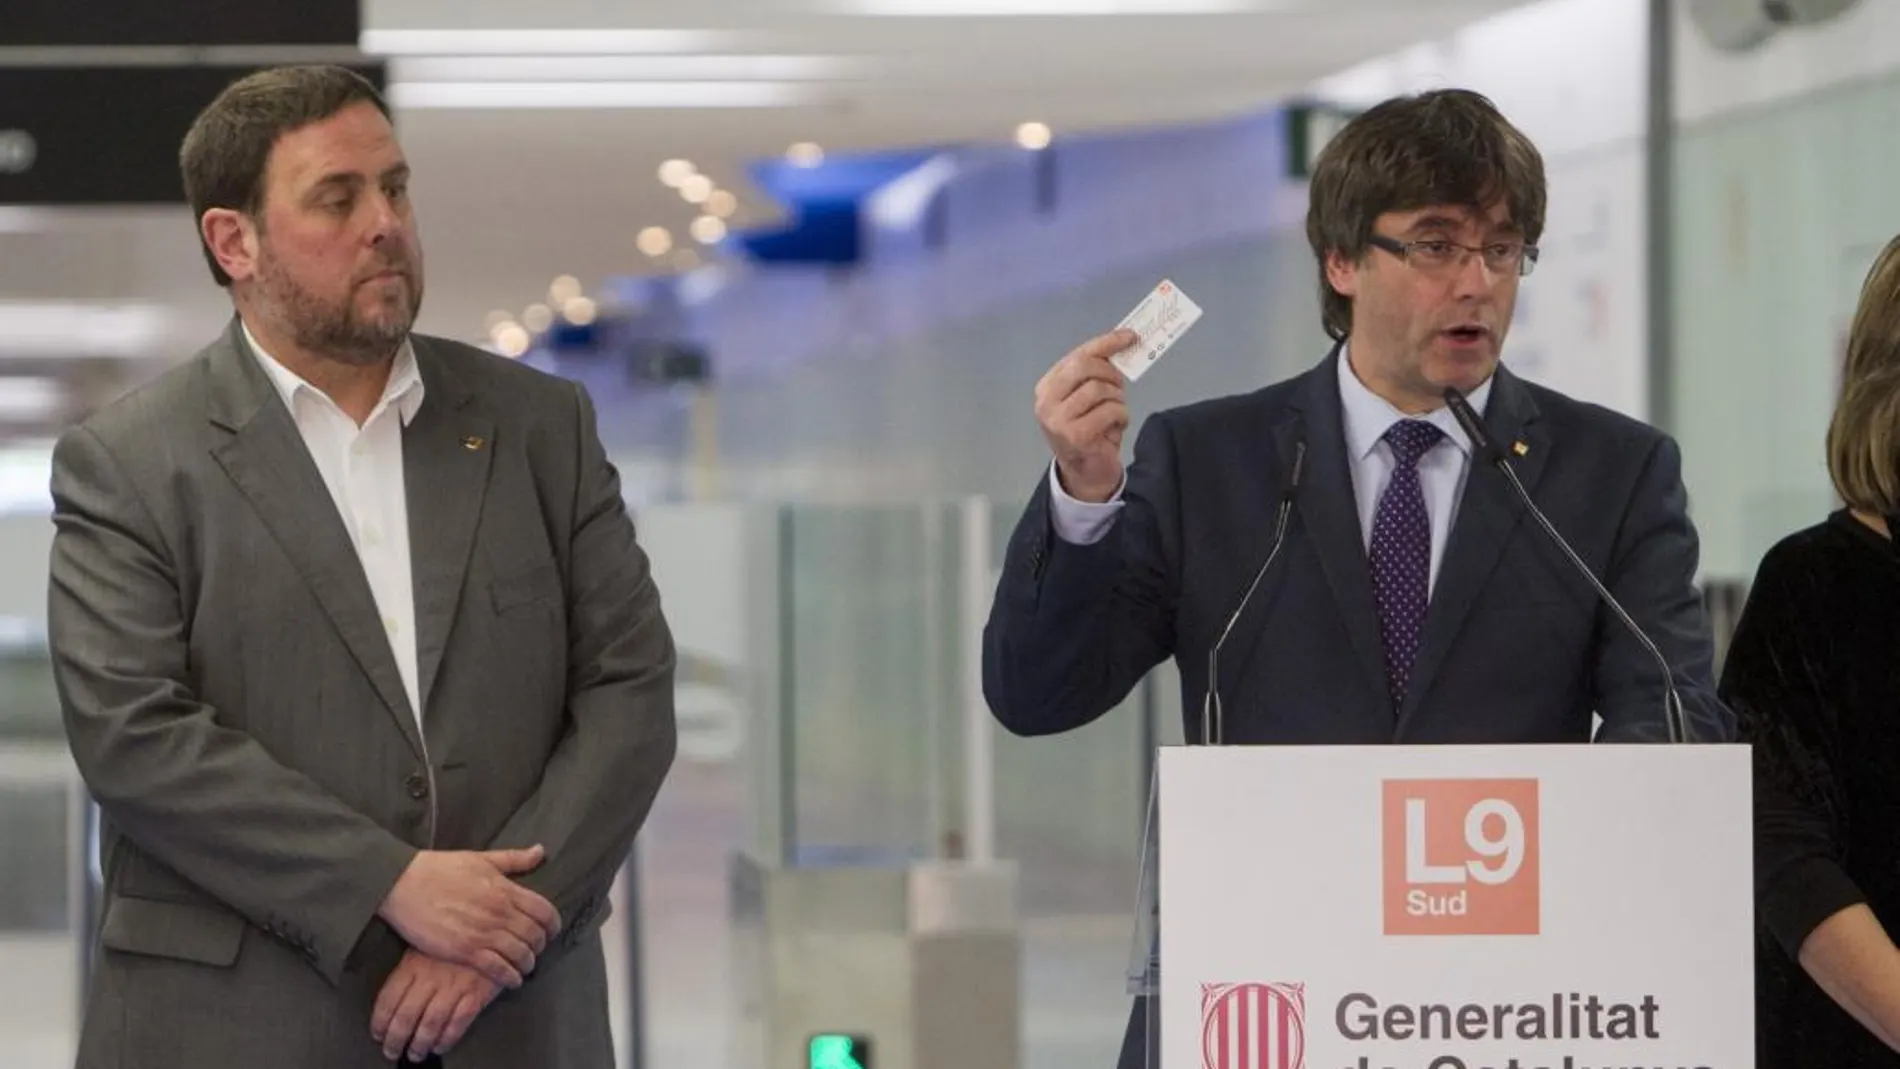 El president de la Generalitat, Carles Puigdemont (d), acompañado del vicepresidente del Gobierno catalán, Oriol Junqueras (i), en el aeropuerto del Prat, durante la inauguración del nuevo tramo de la línea 9 del metro de Barcelona